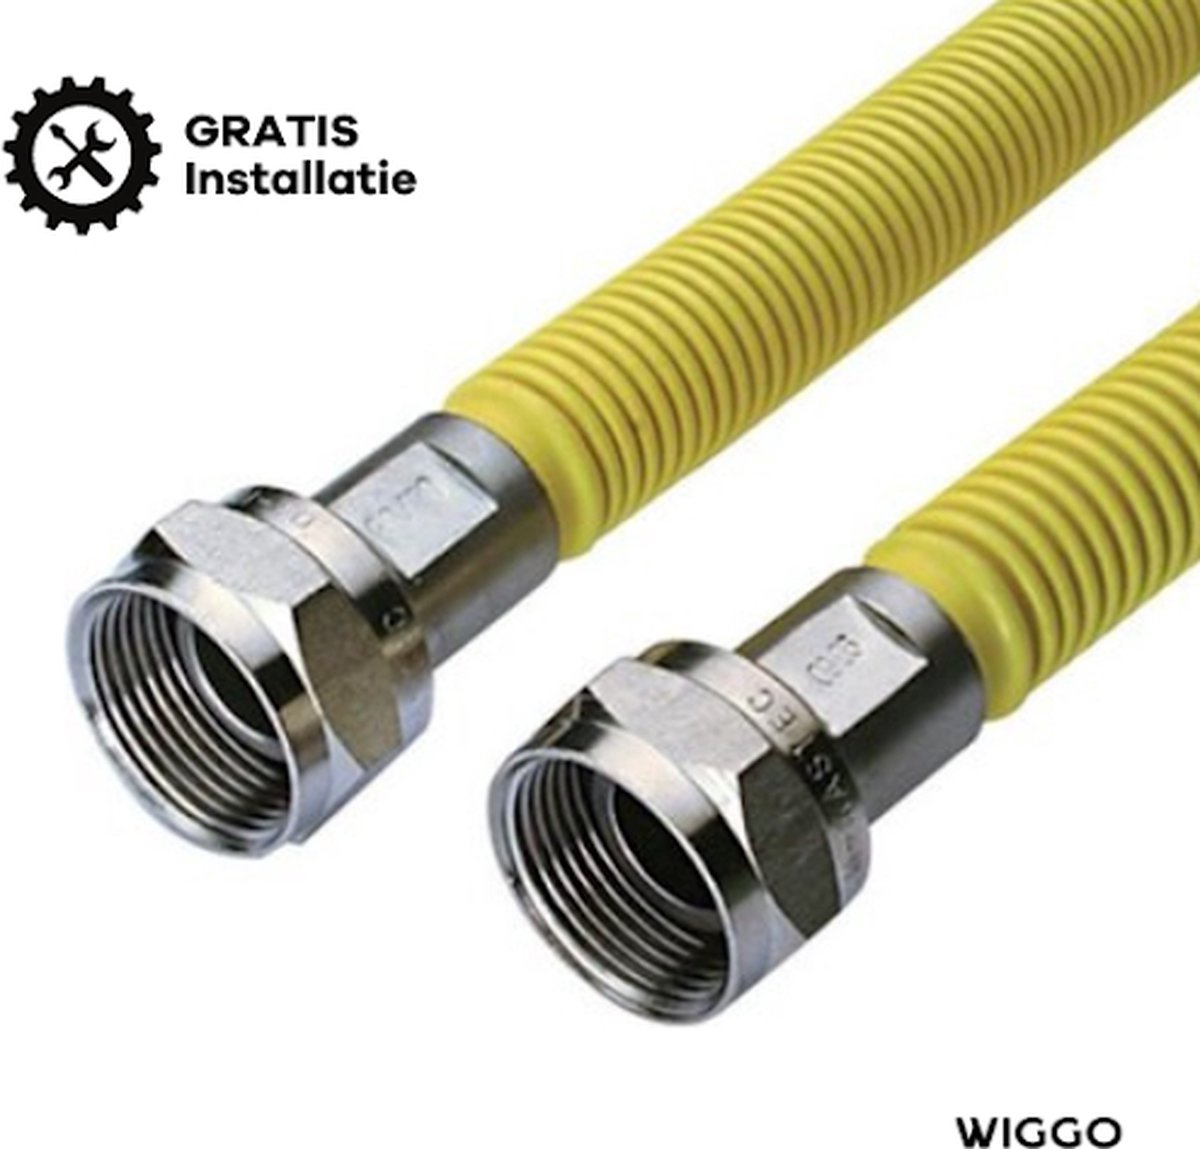 Wiggo Ecoflex NL 1000 mm - Gratis installatie